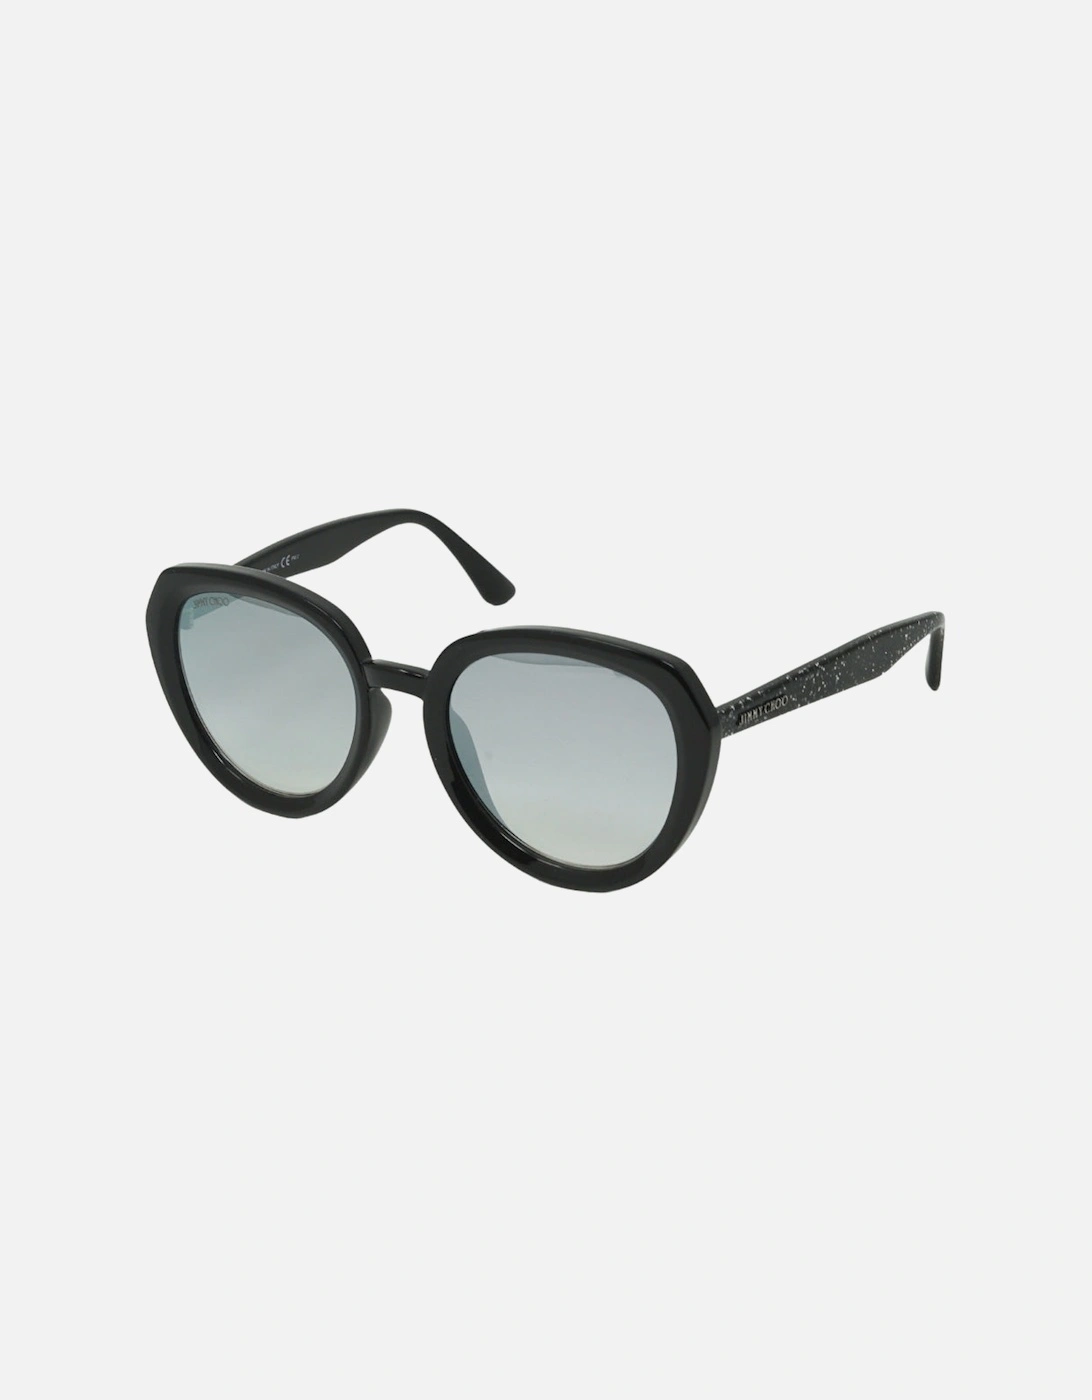 MACE/S NS8/IC Sunglasses, 4 of 3